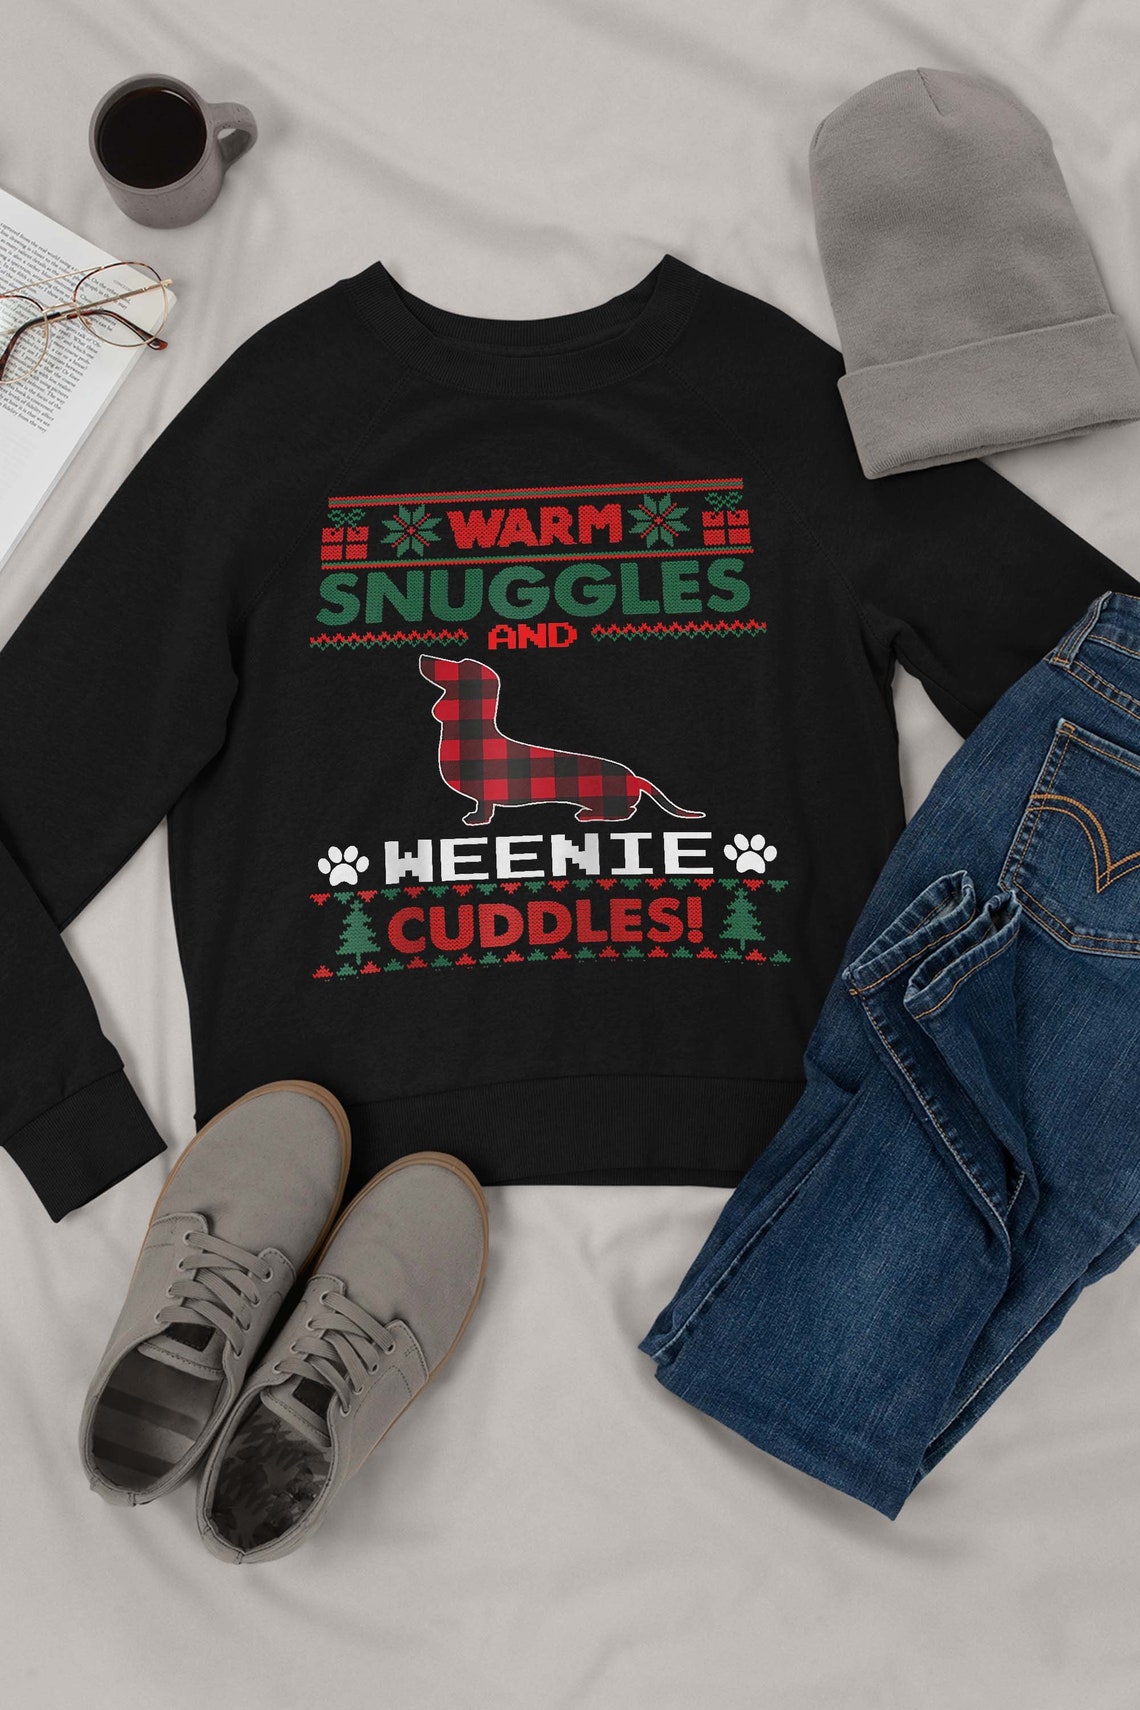 Dachshund Weenie Christmas Pajama Shirt